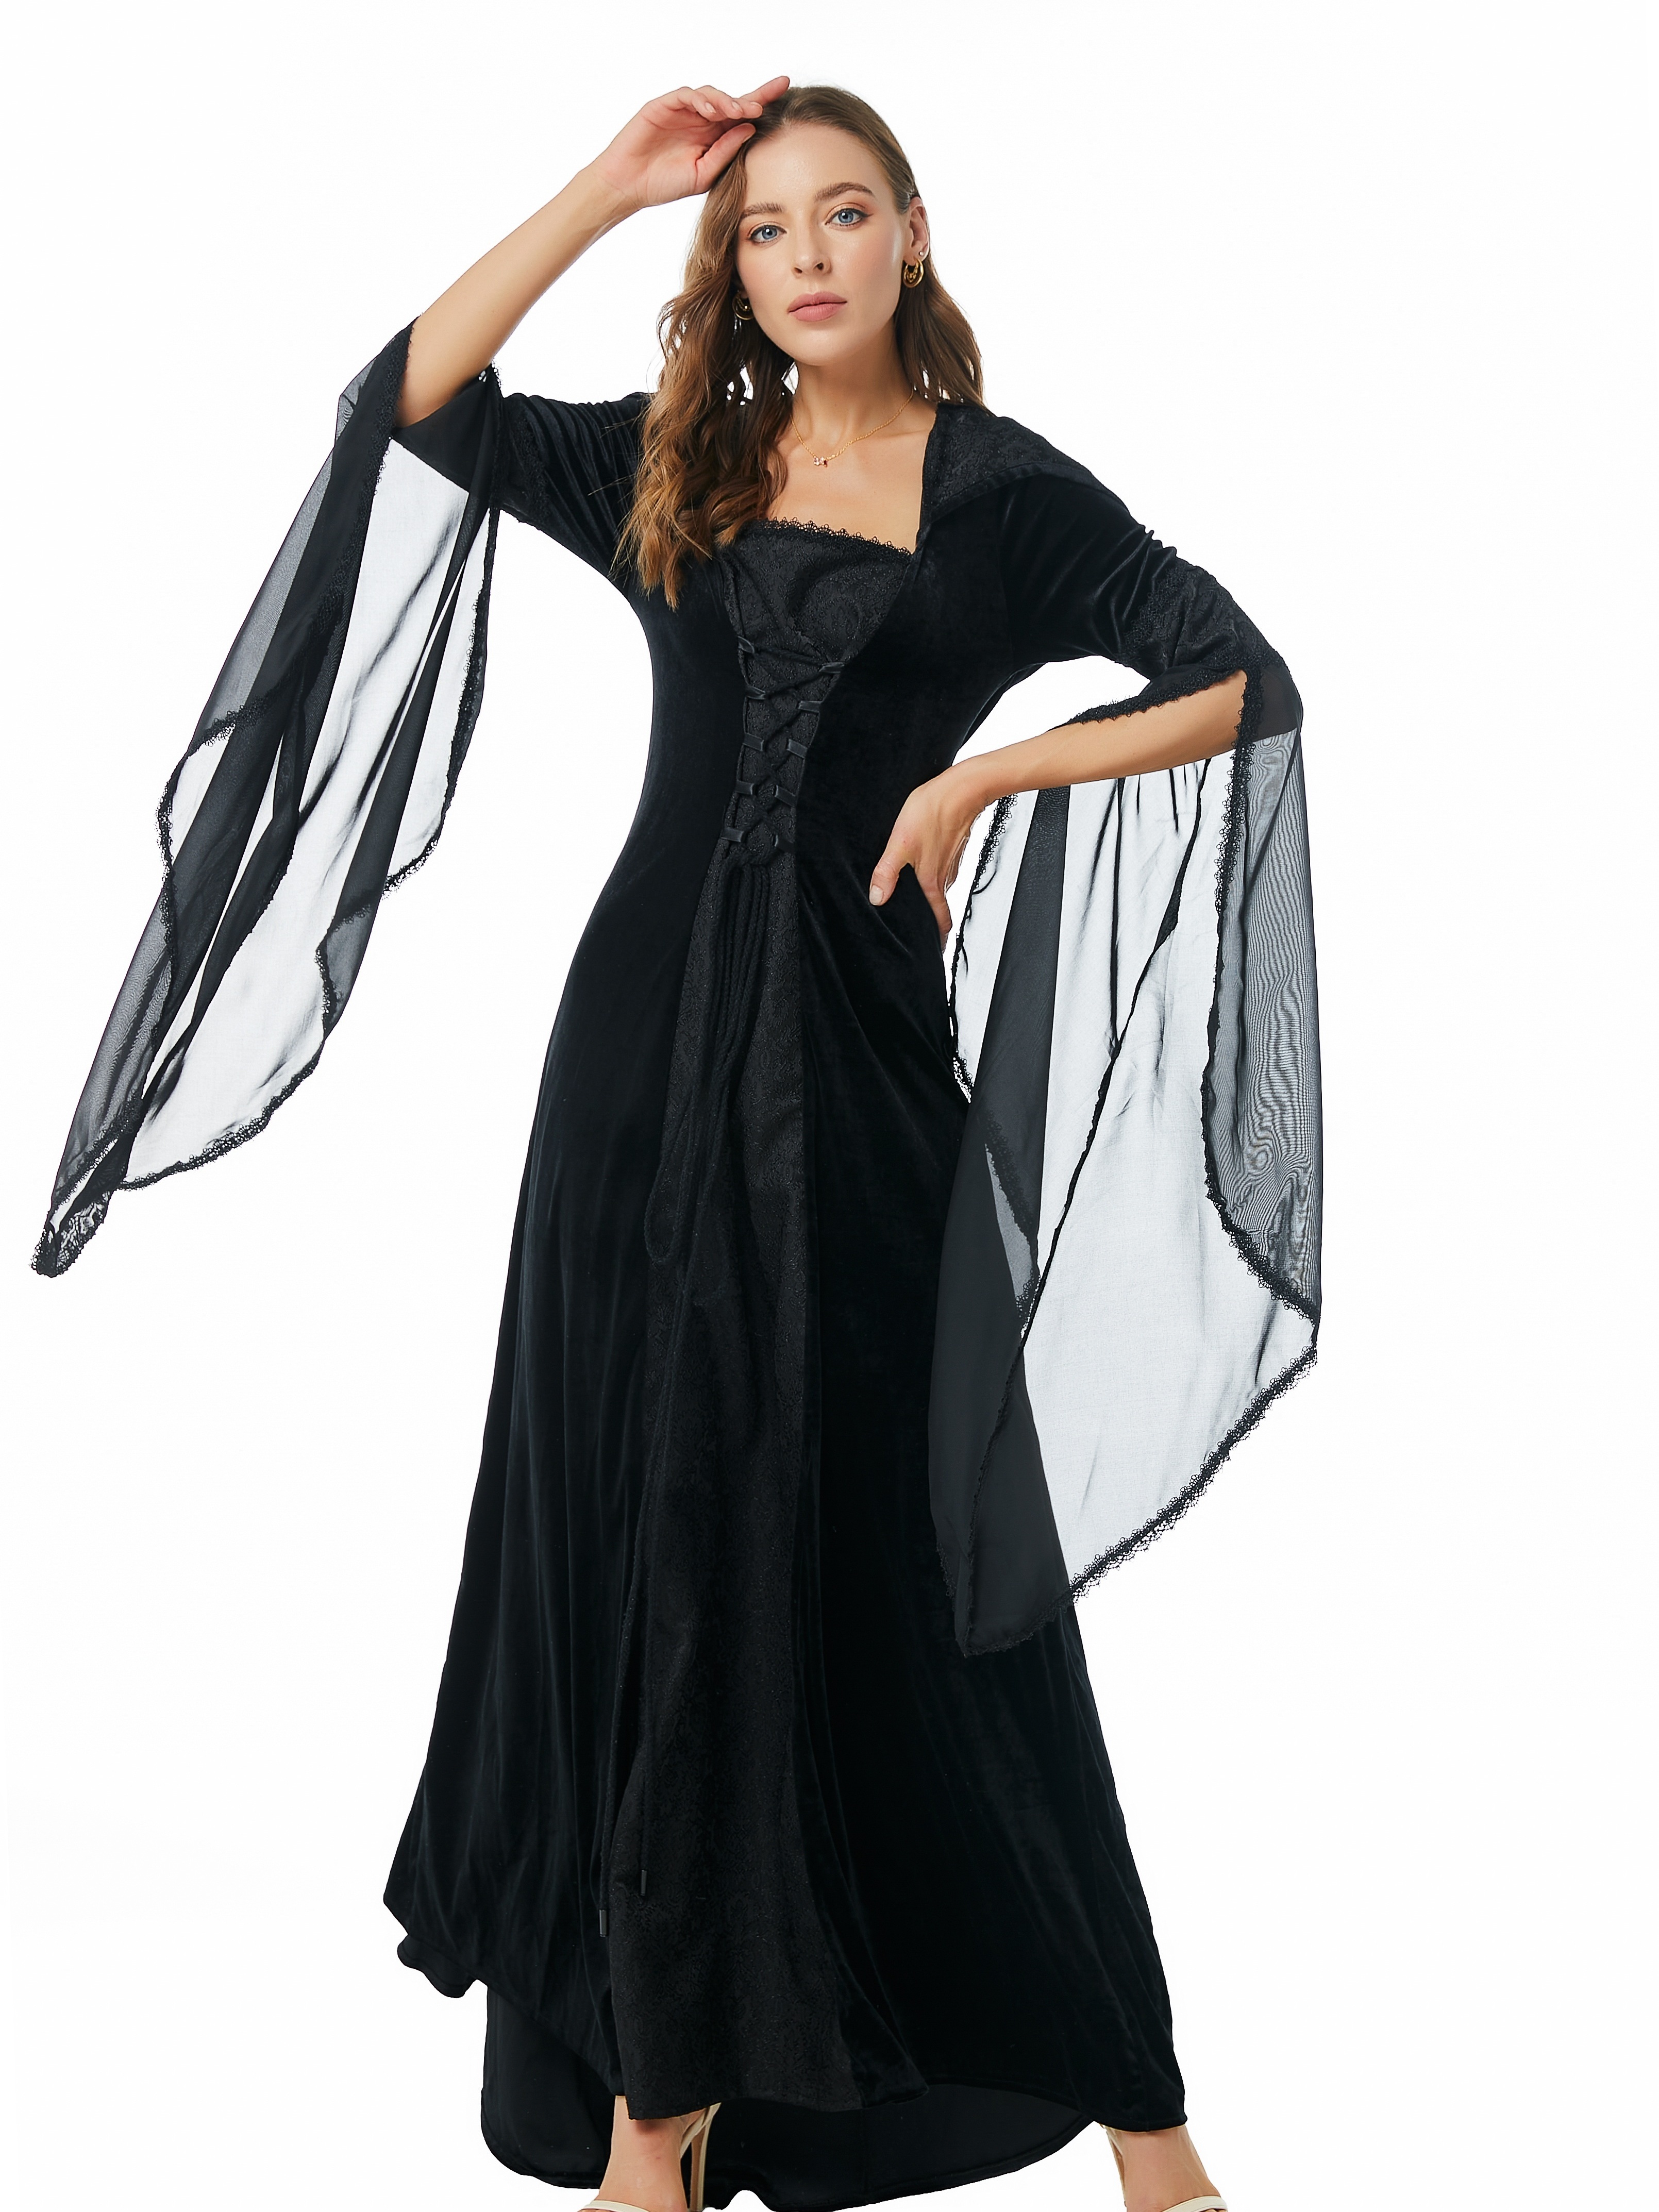  GRACEART Women's Renaissance Skirt Cincher Corset High Waist  Gothic Skirt : Clothing, Shoes & Jewelry